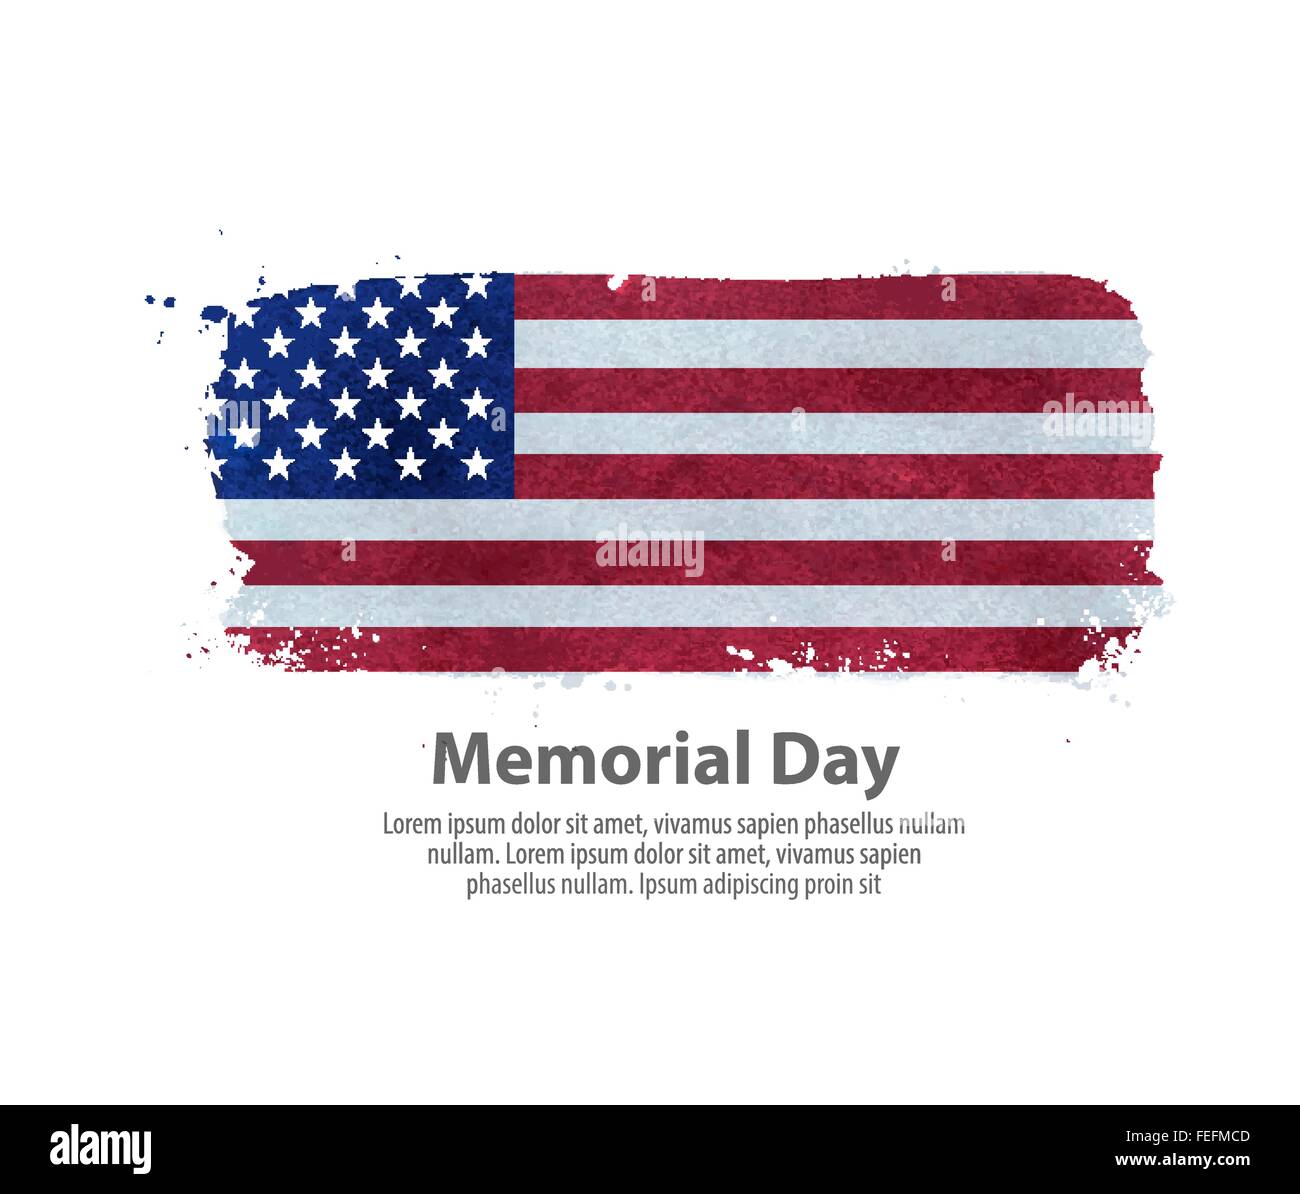 Memorial Day. Flagge der Vereinigten Staaten. Vektor-illustration Stock Vektor